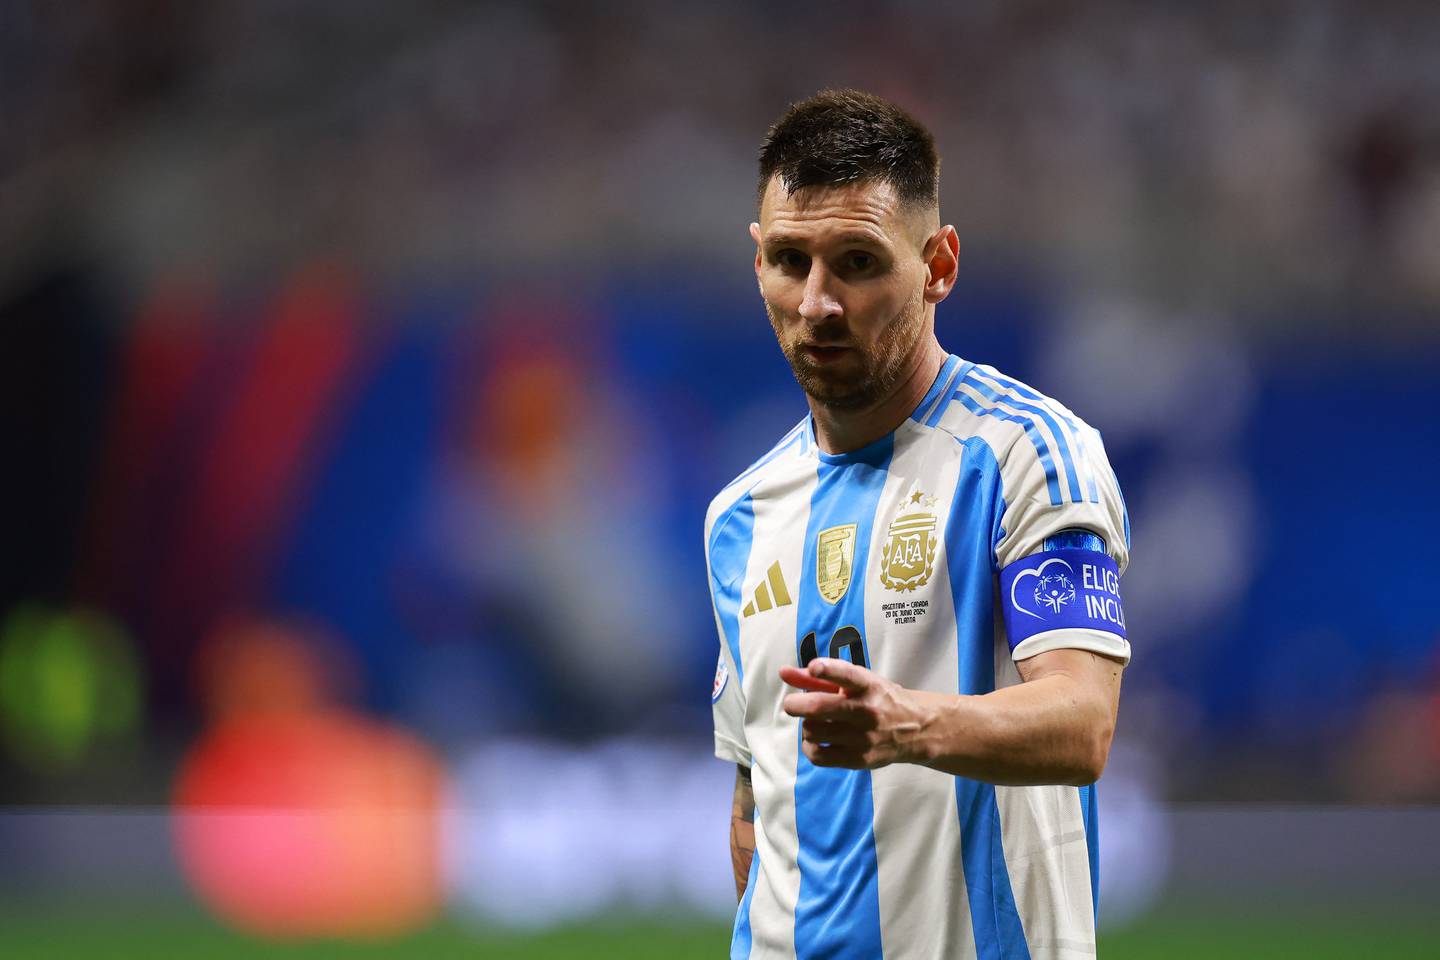 Lionel Messi cumplirá 39 años poco después del inicio del Mundial 2026. Podría intentar convertirse en el primer futbolista en disputar seis Mundiales, dependiendo de su decisión y su condición física.